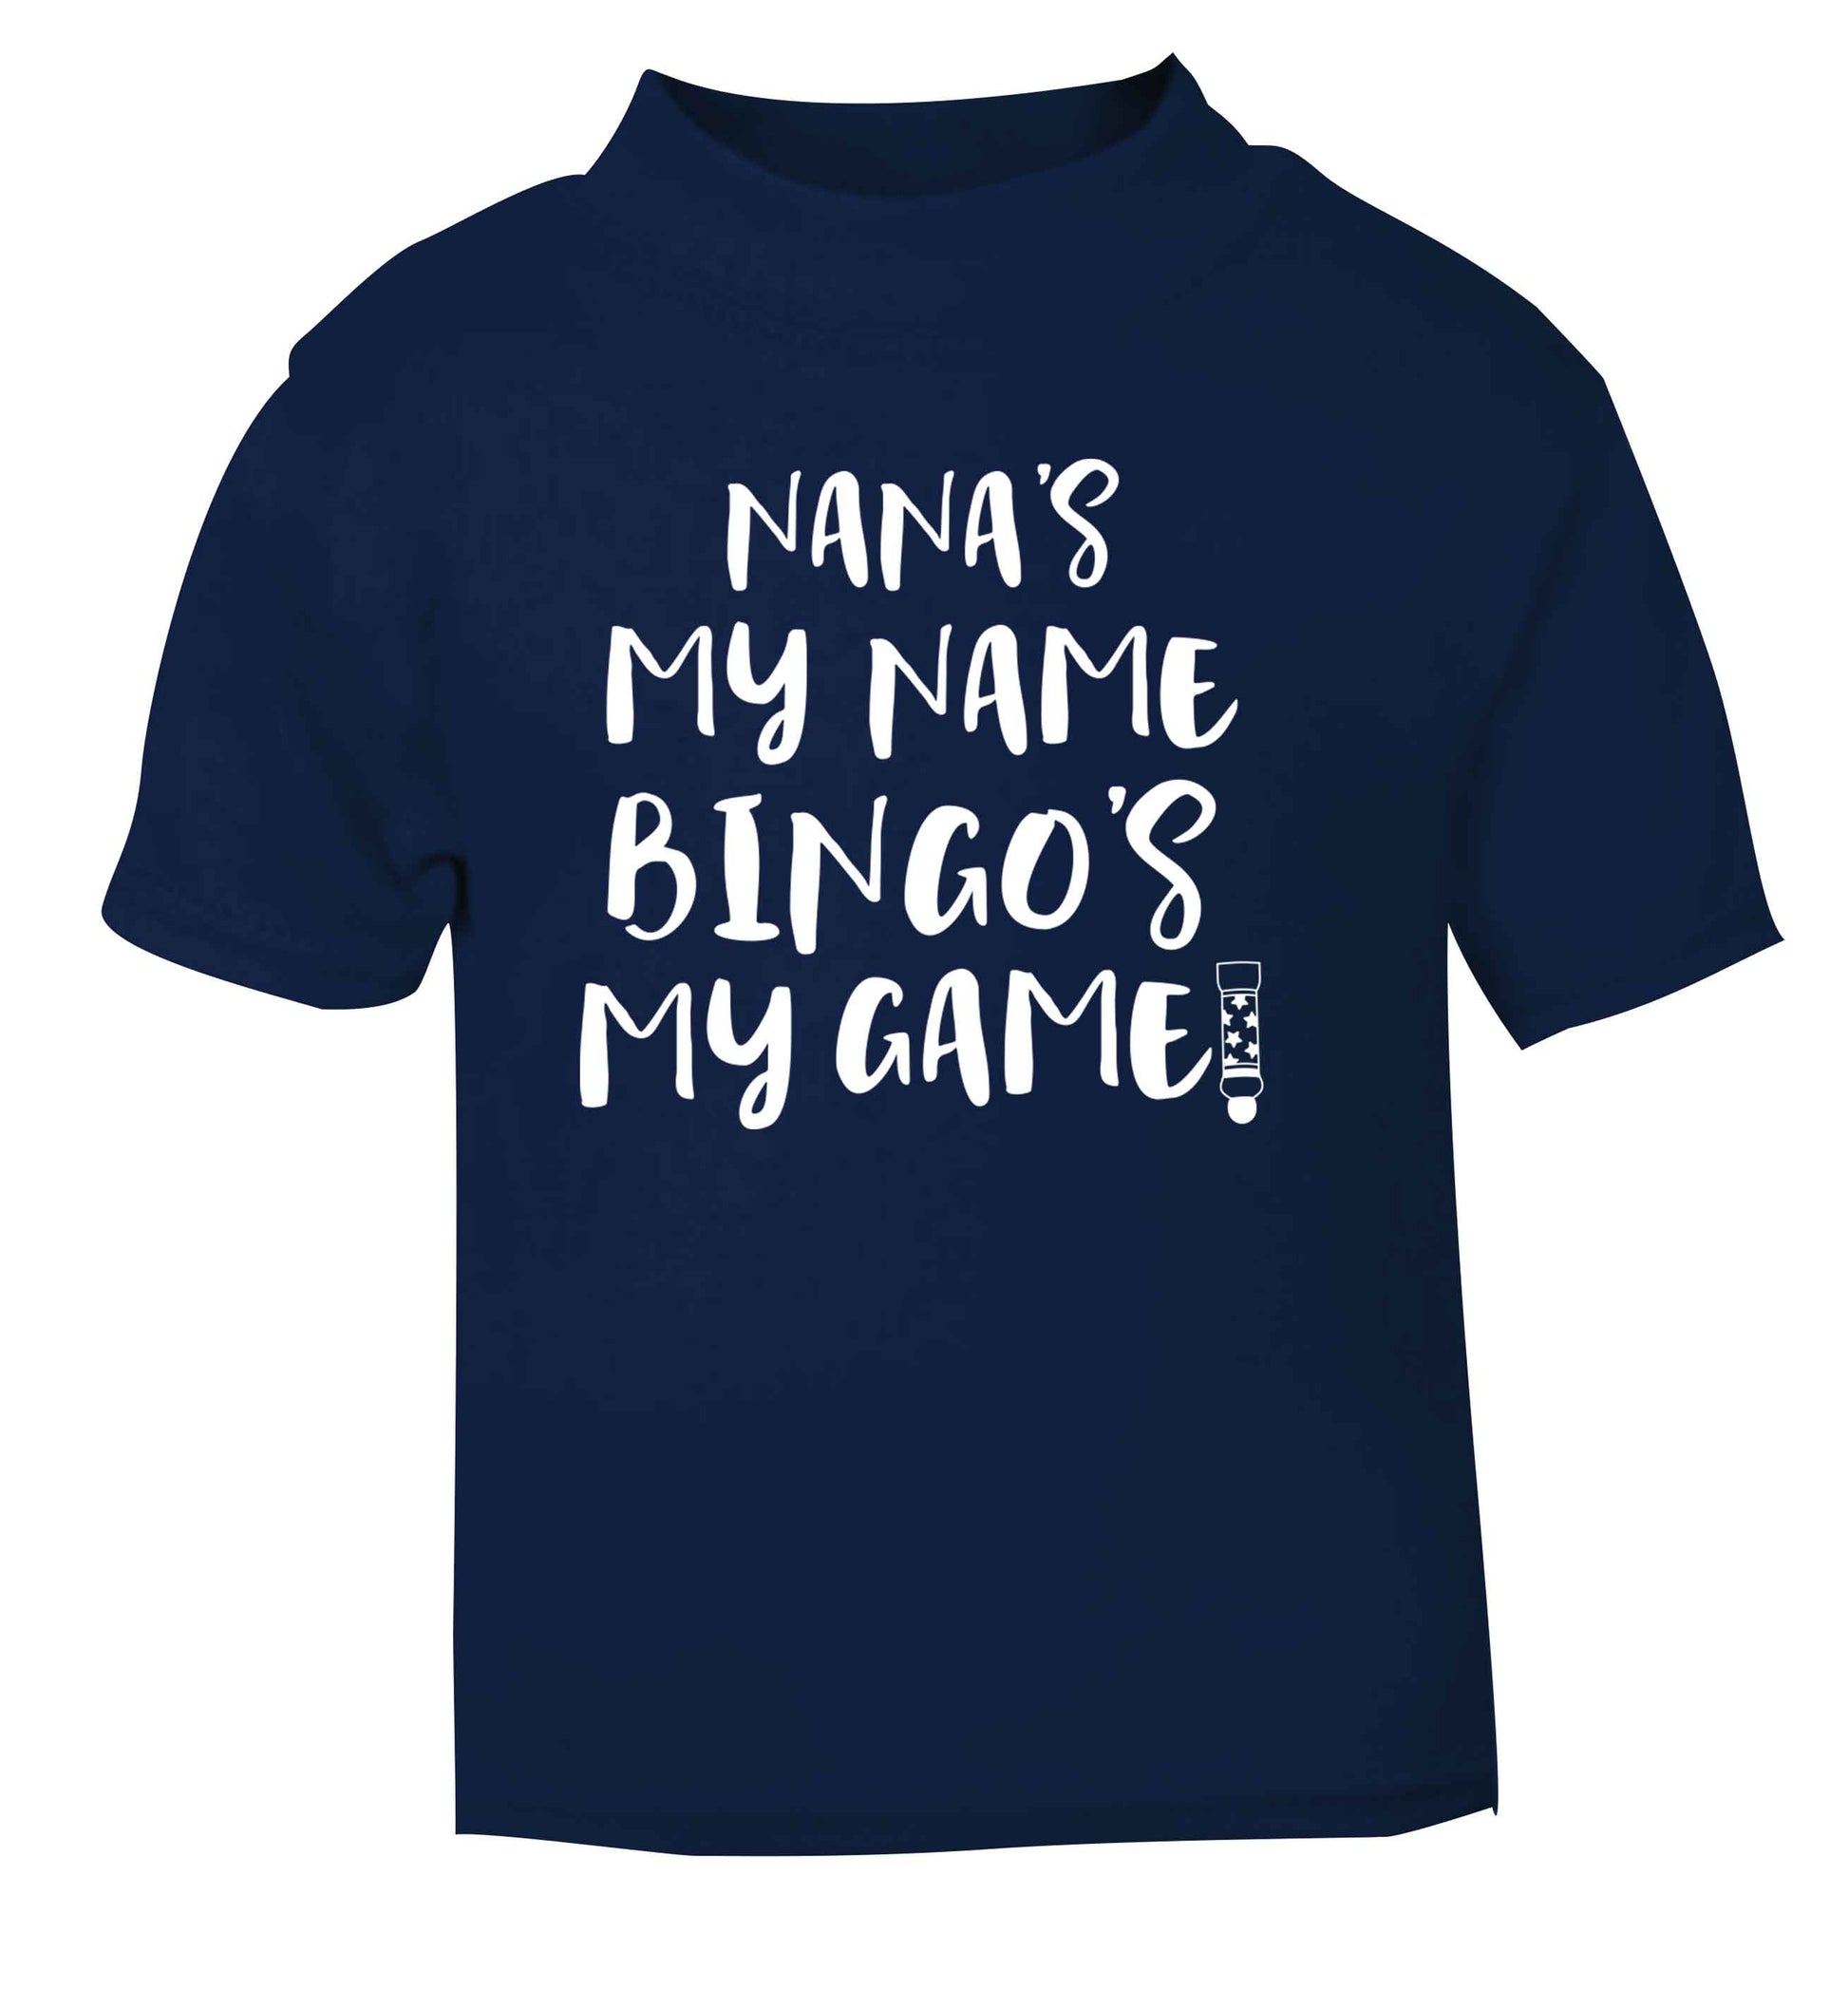 Nana's my name bingo's my game! navy Baby Toddler Tshirt 2 Years